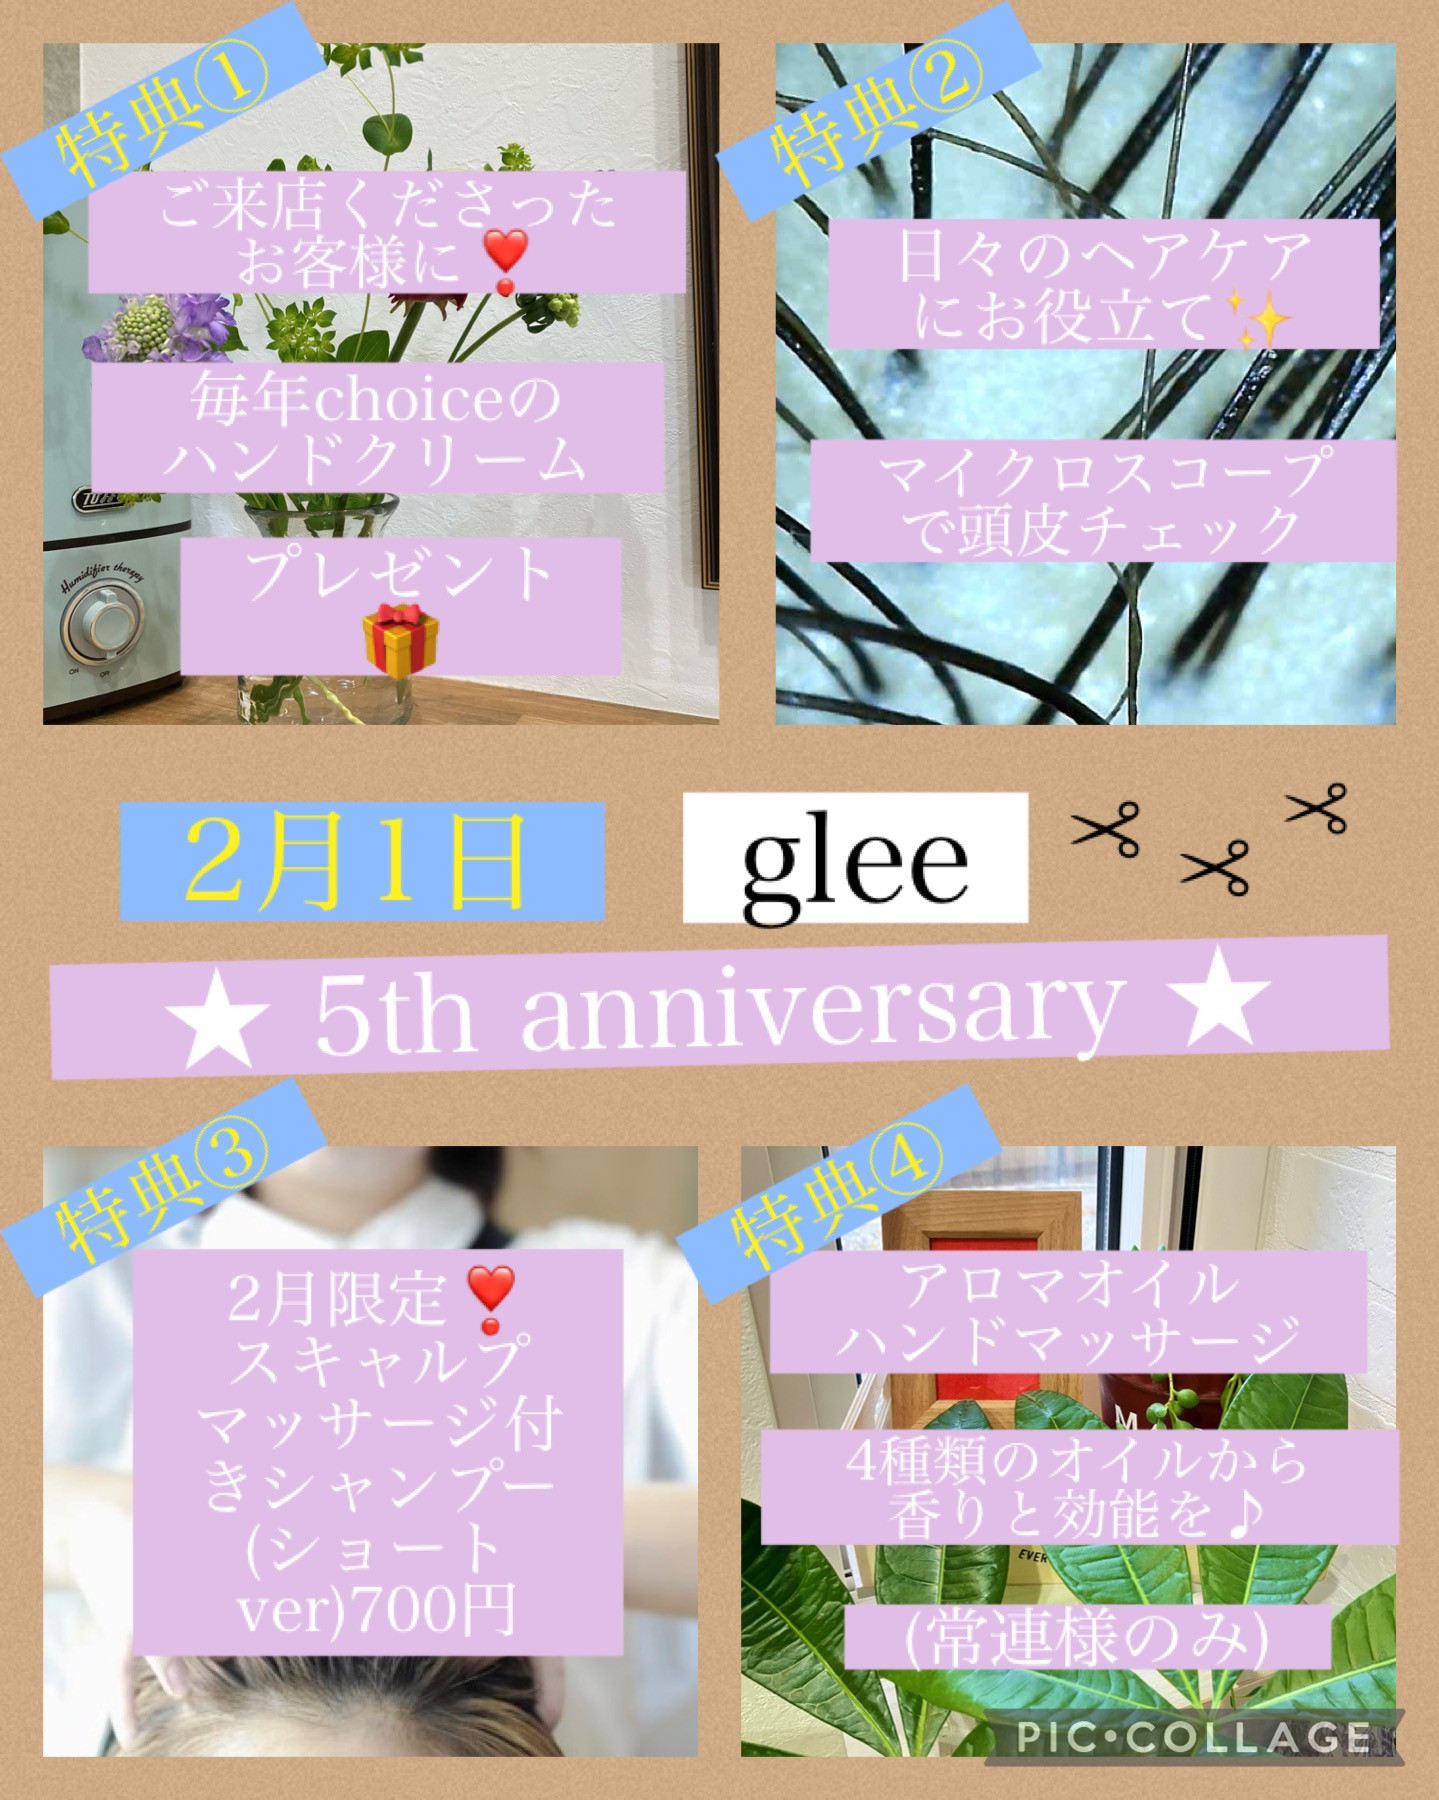 2月1日は glee 5周年記念日です☆彡